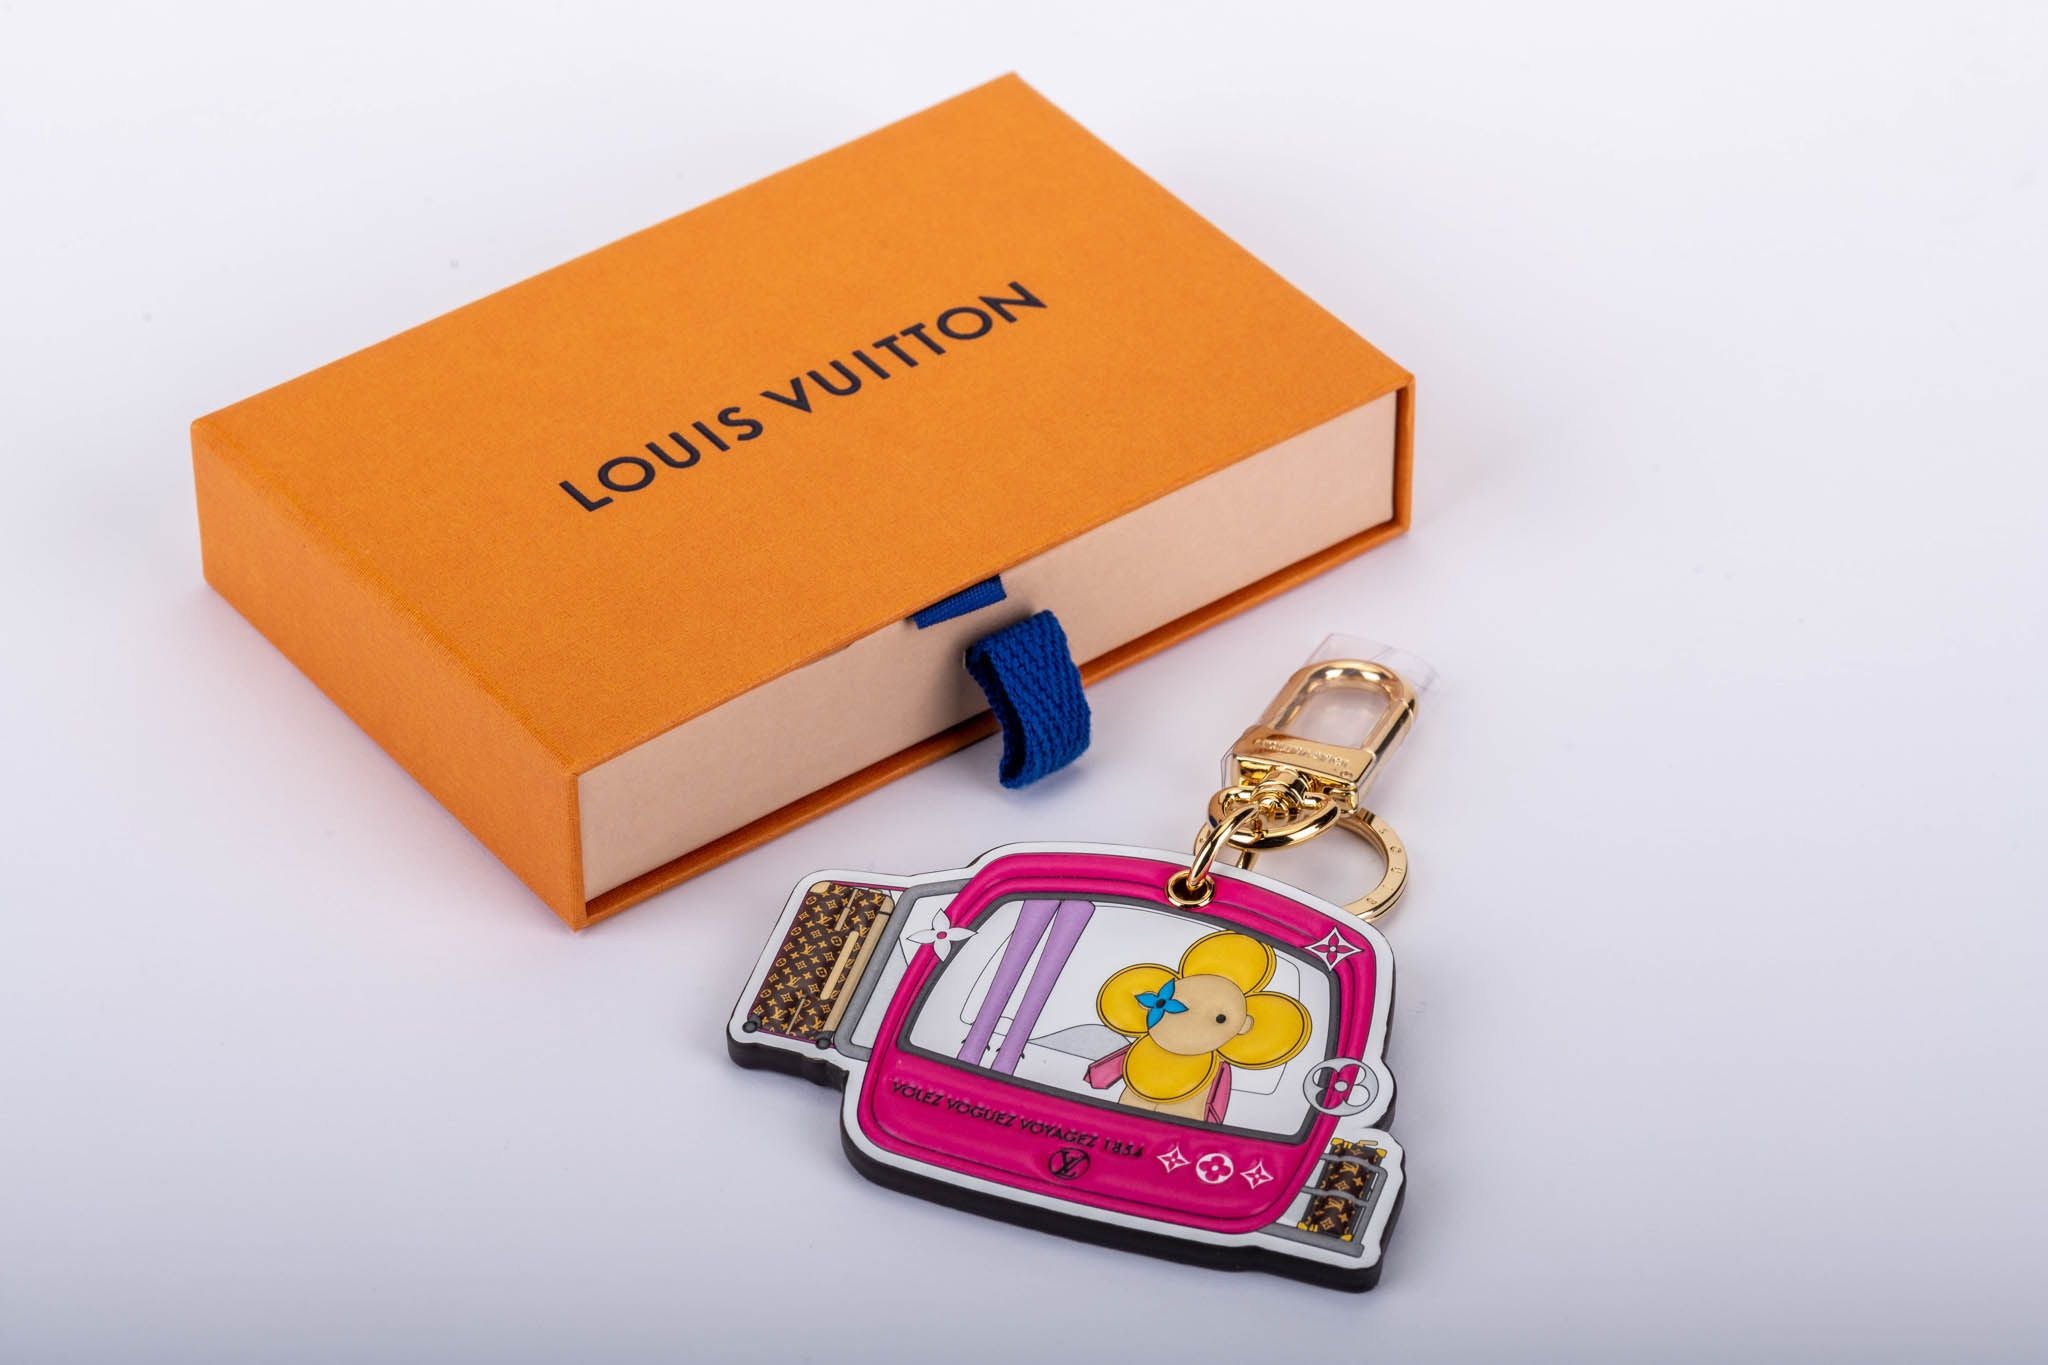 Louis Vuitton Courchevel Keychain - Vintage Lux